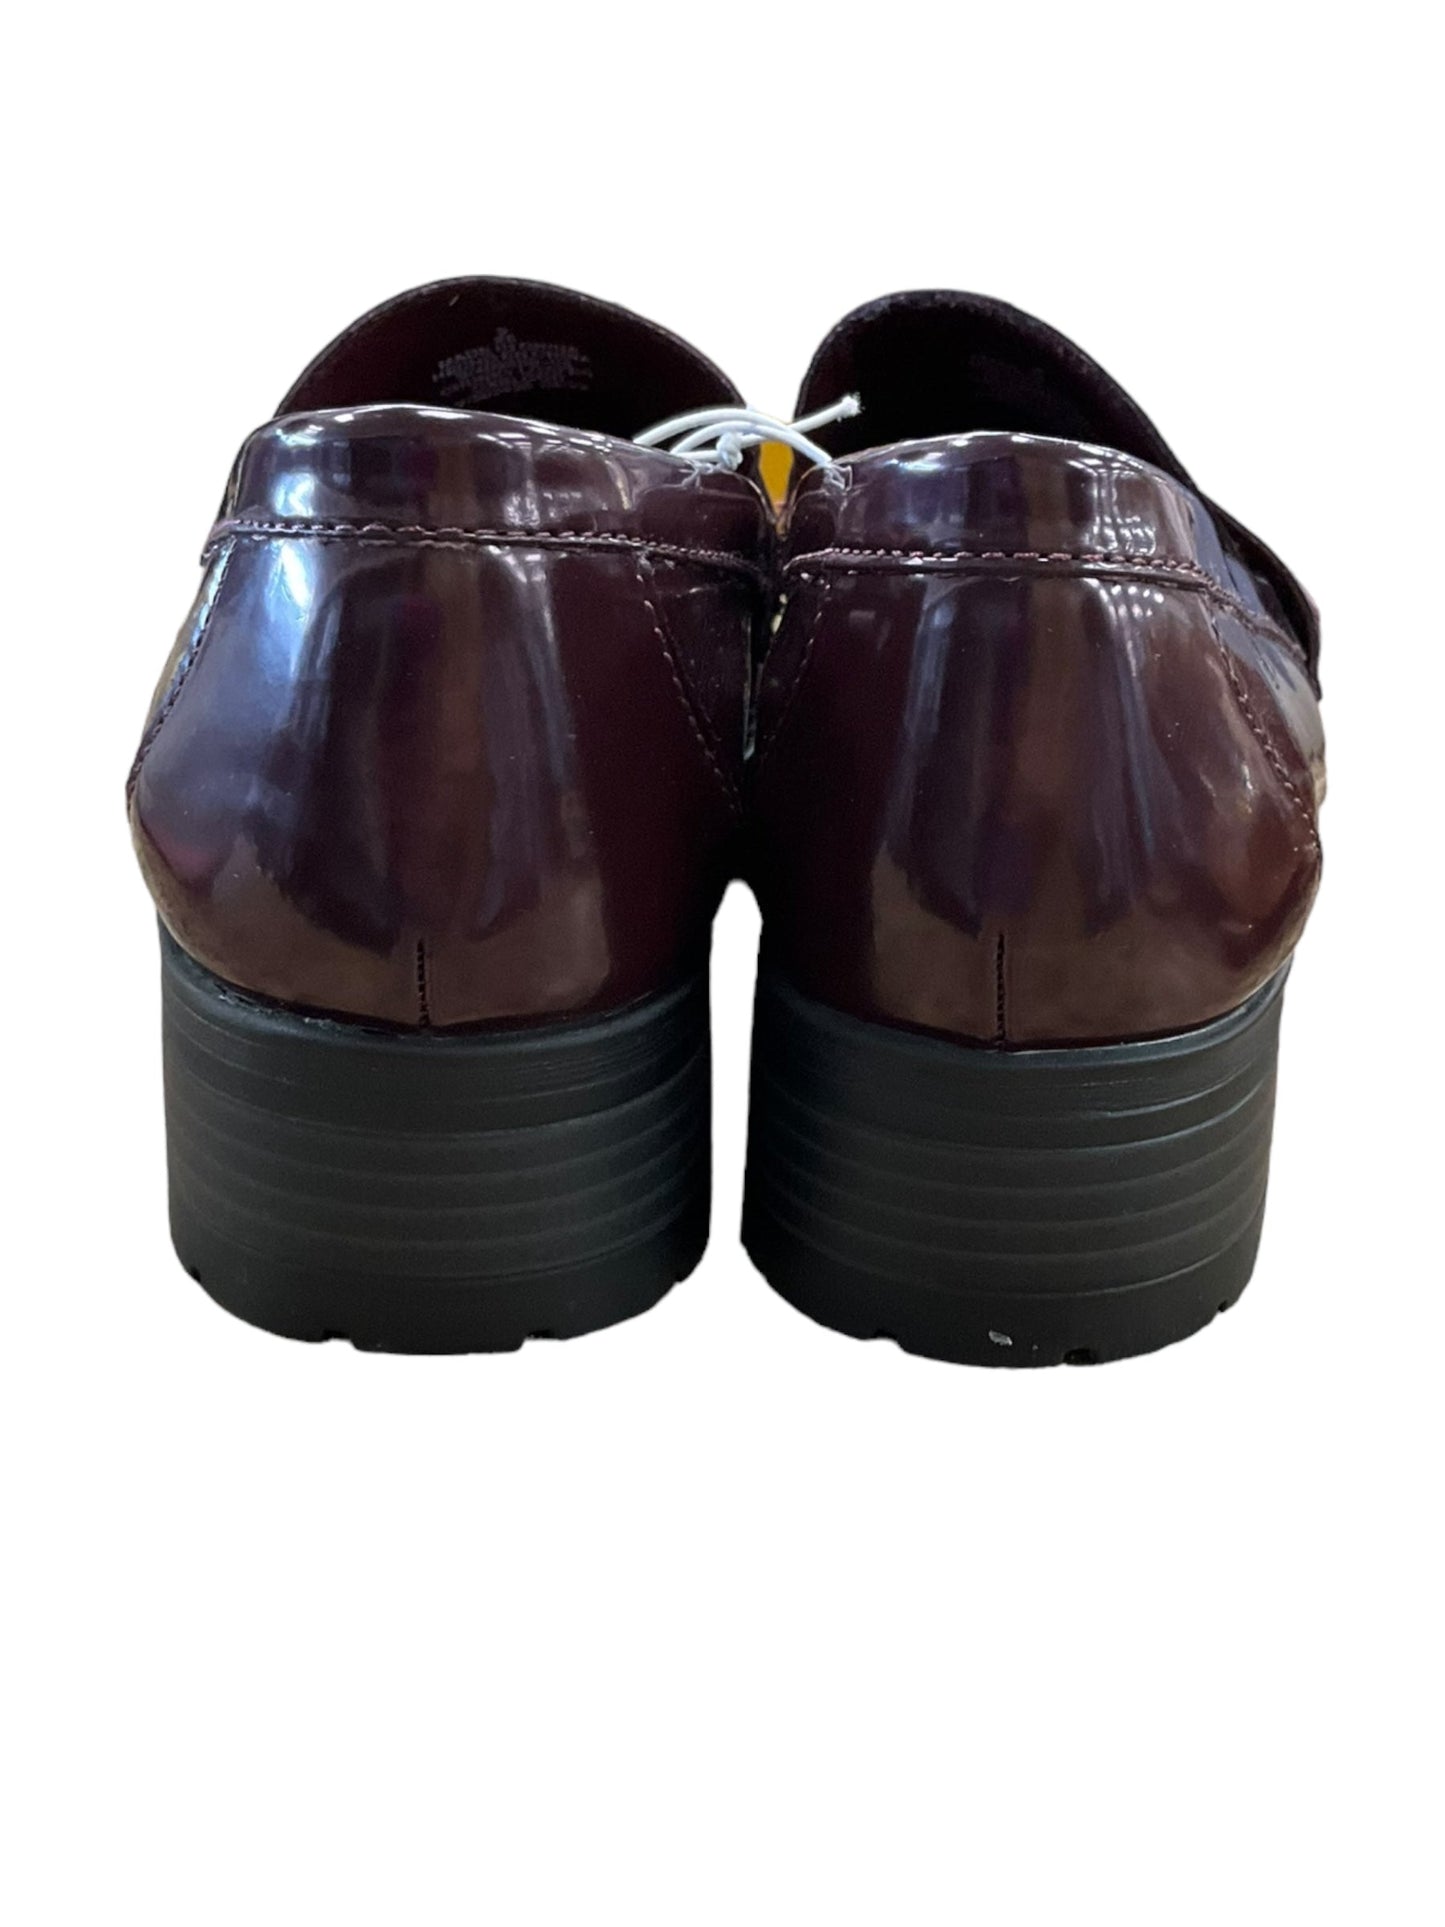 Purple Shoes Flats Old Gringo, Size 9